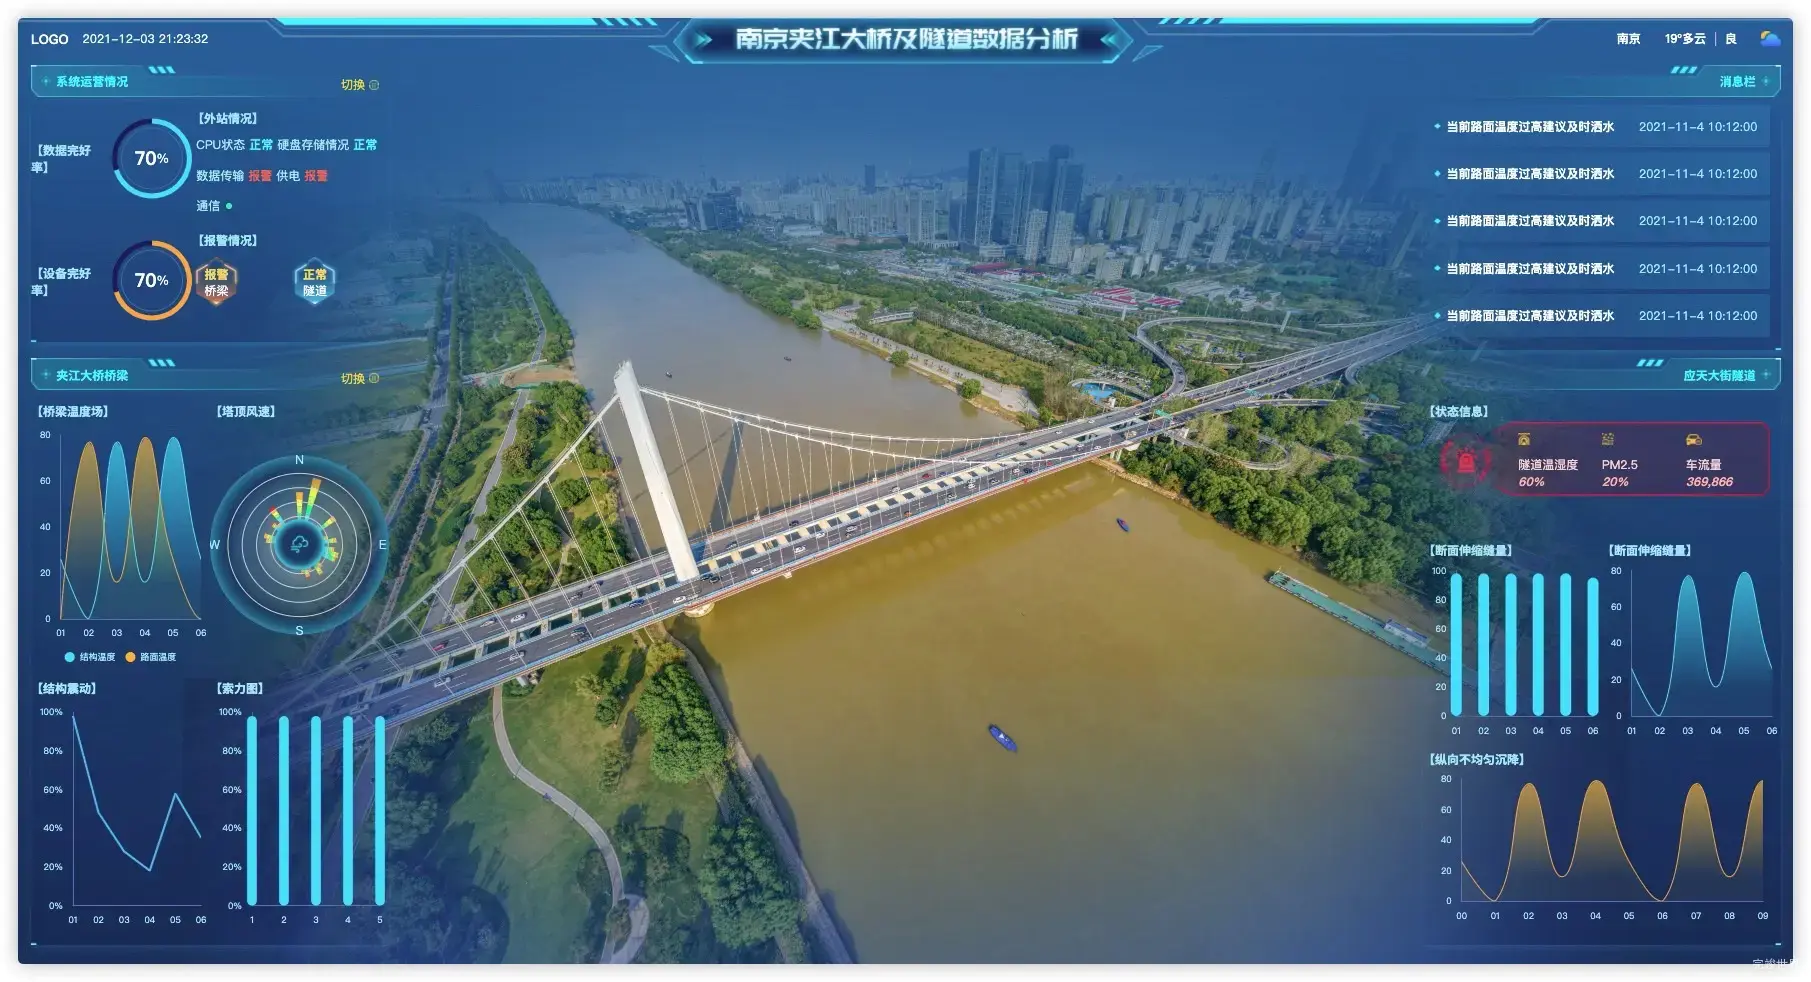 vue 数据可视化大屏 夹江大桥及隧道数据分析截图